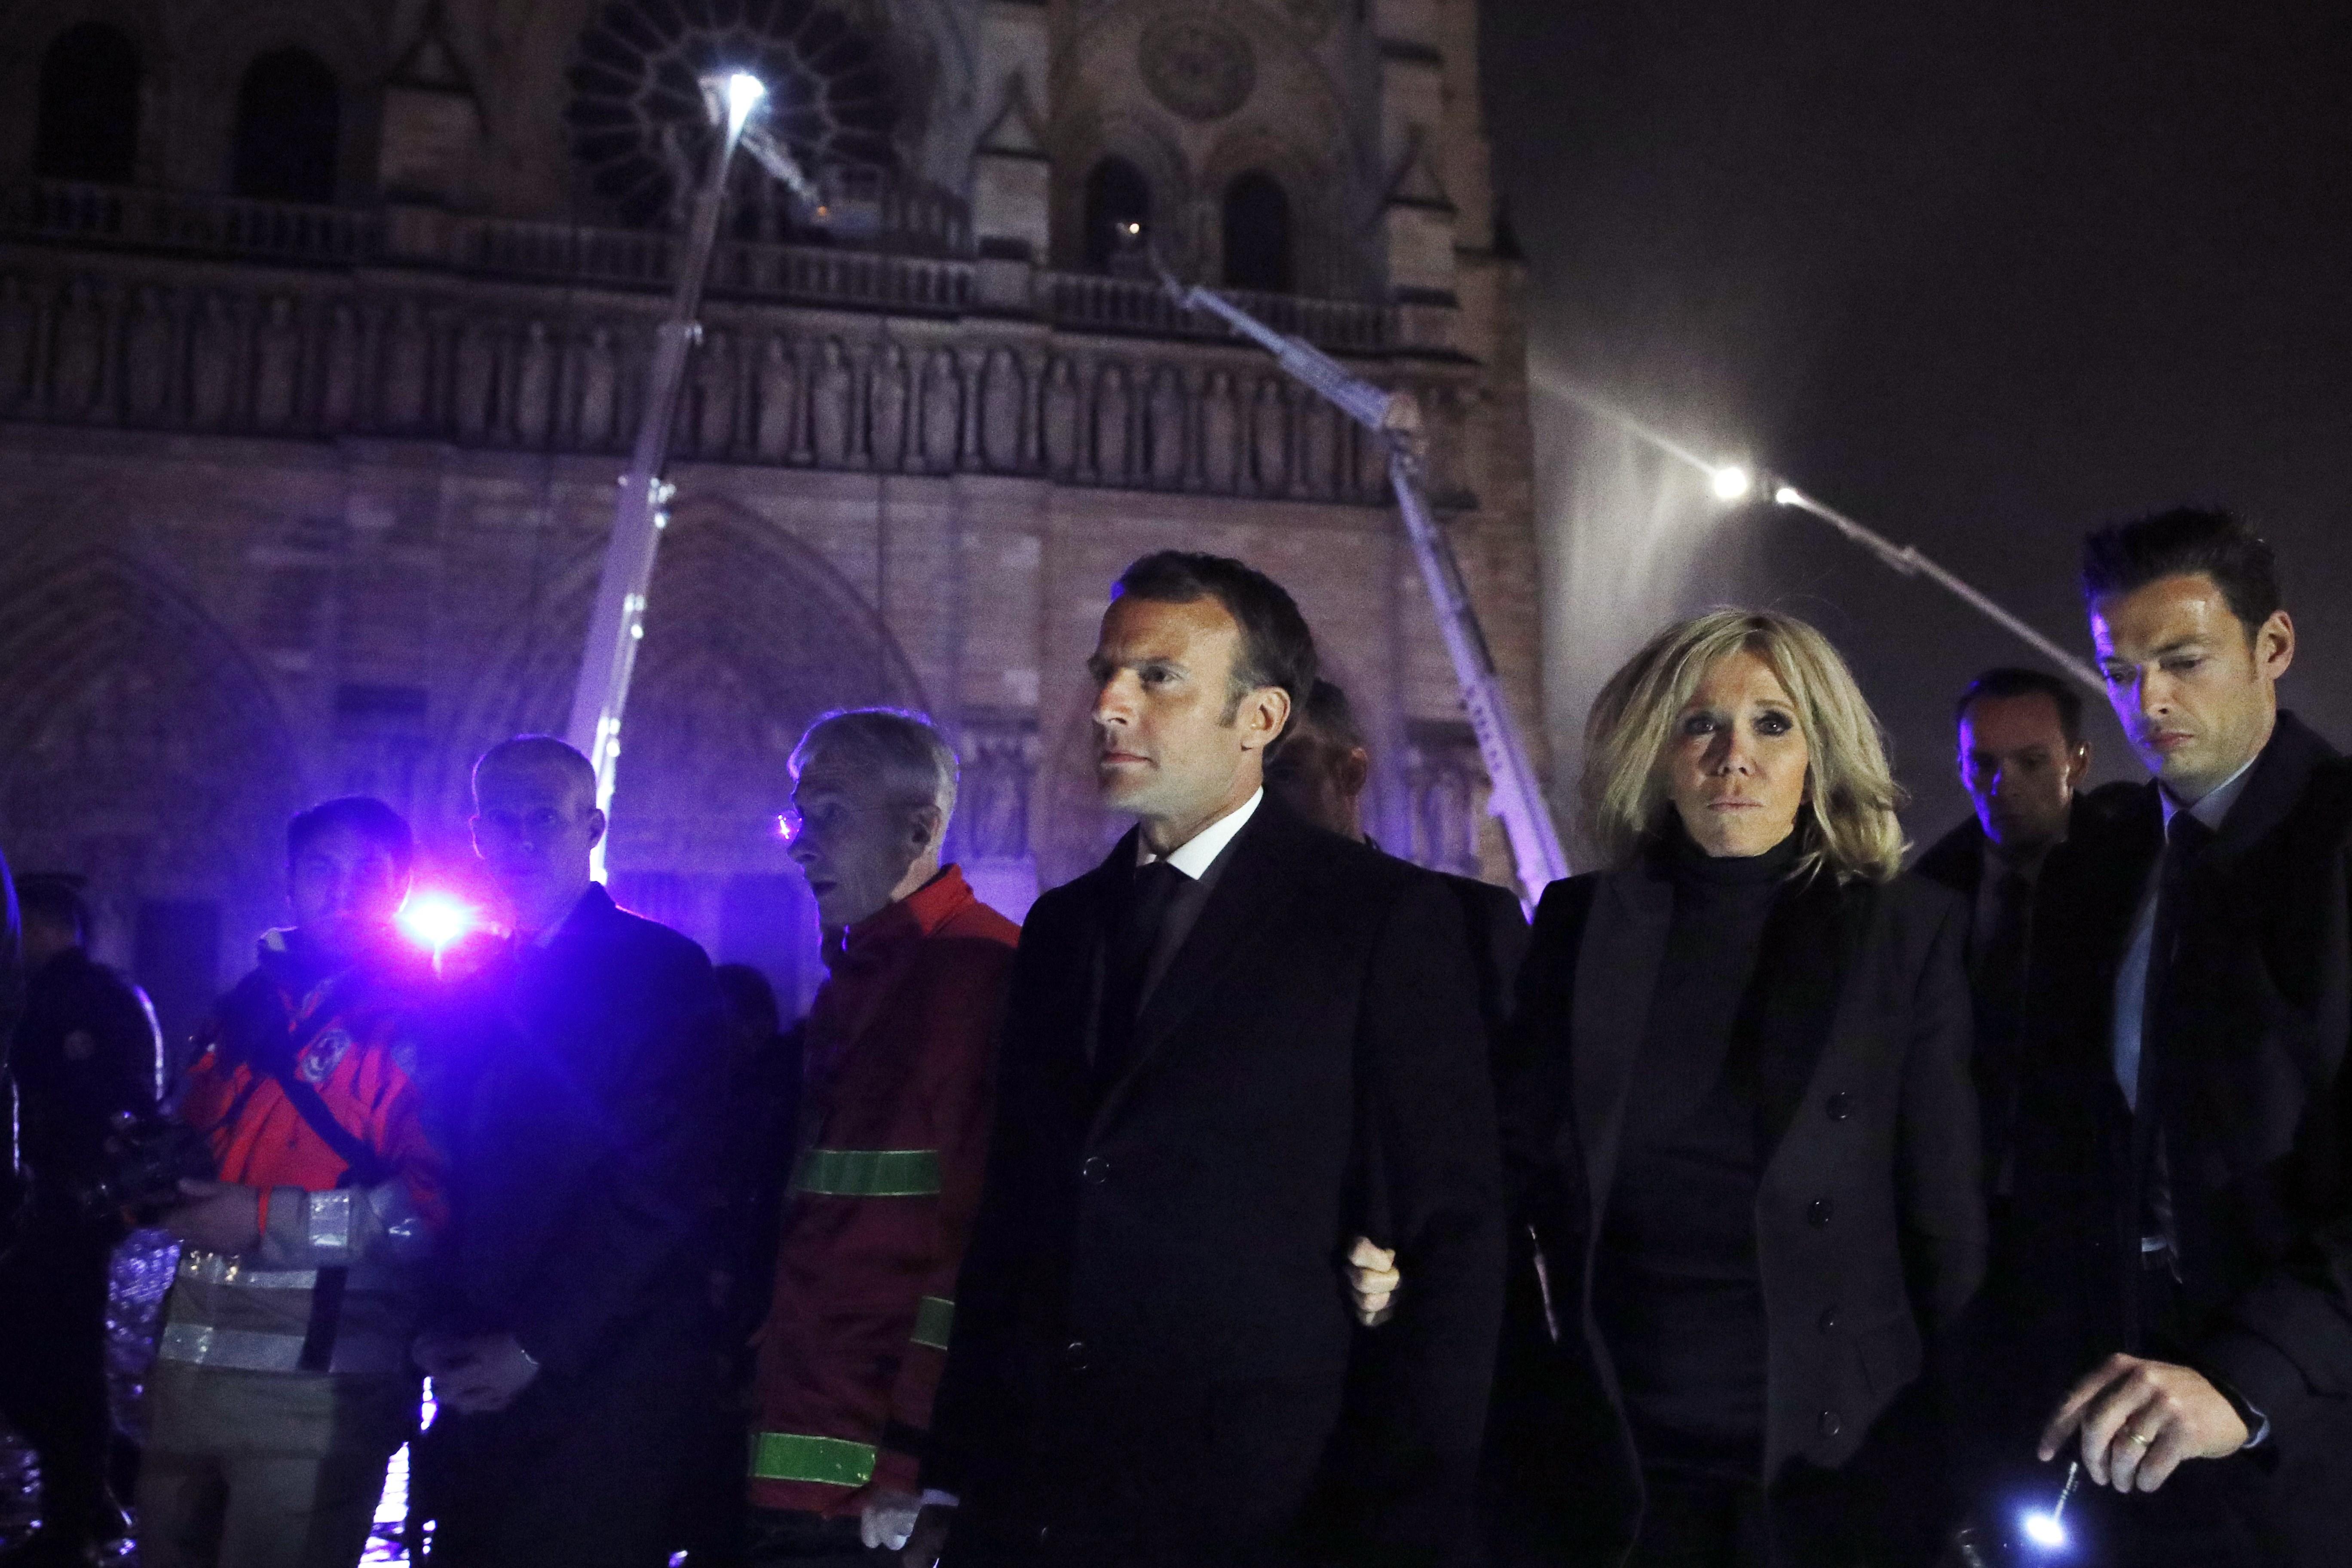 El presidente de Francia, Emmanuel Macron, visitan a los bomberos que intentan apagar el incendio en la catedral de Notre Dame. (Foto Prensa Libre: EFE)